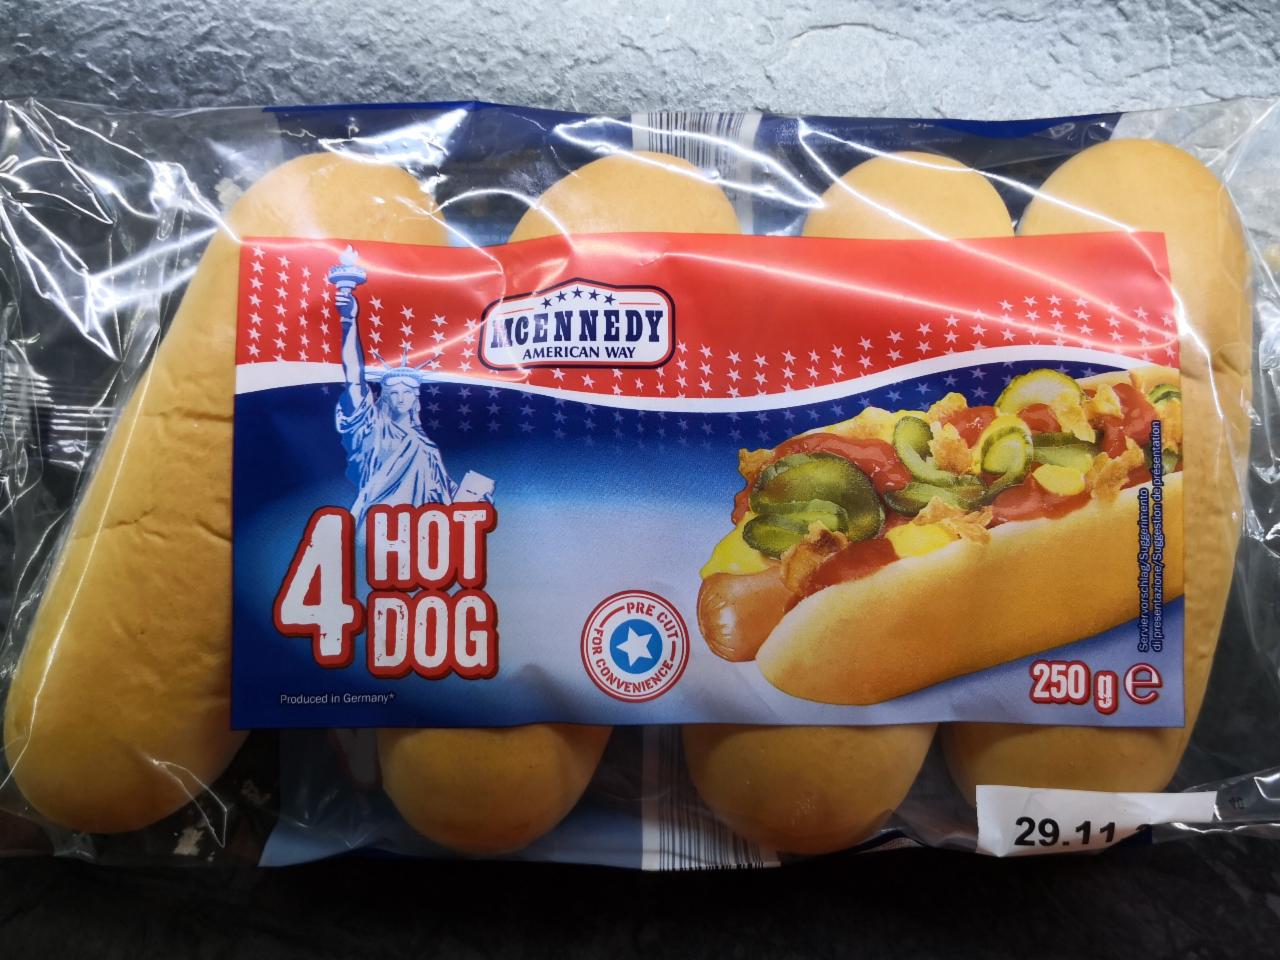 4 Hot Dogs Rolls McEnnedy American Way - kalorie, kJ a nutriční hodnoty